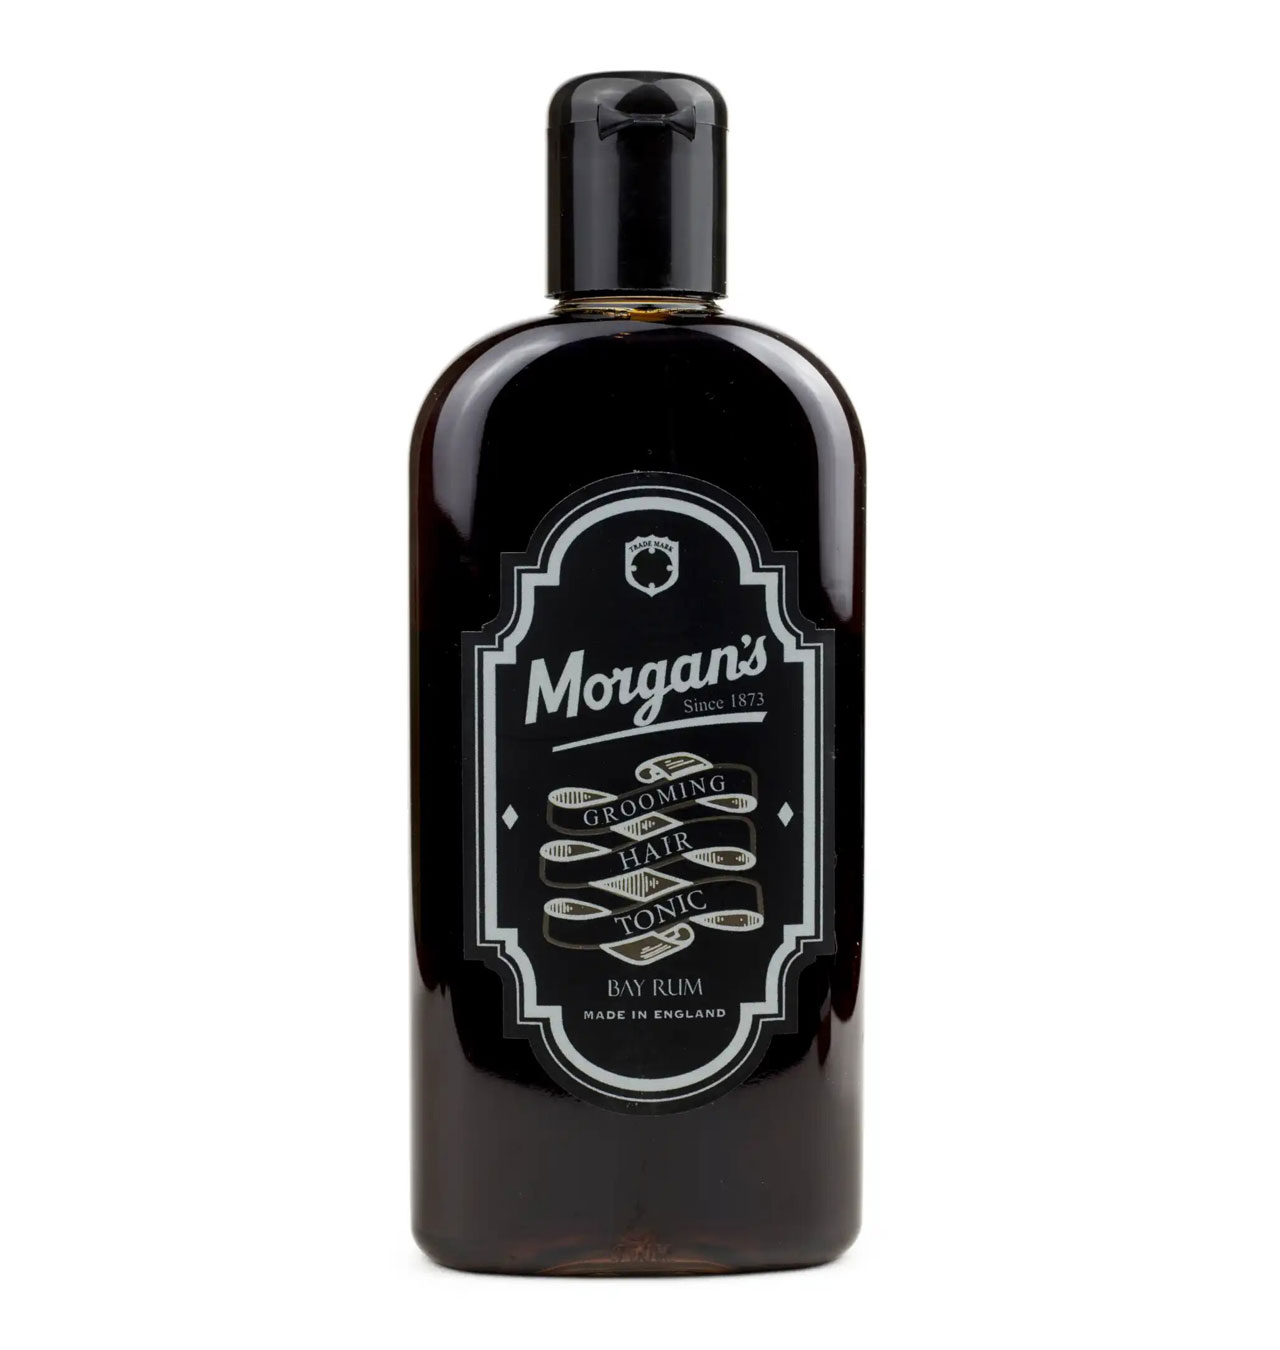 Morgans---Bay-Rum-Grooming-Hair-Tonic